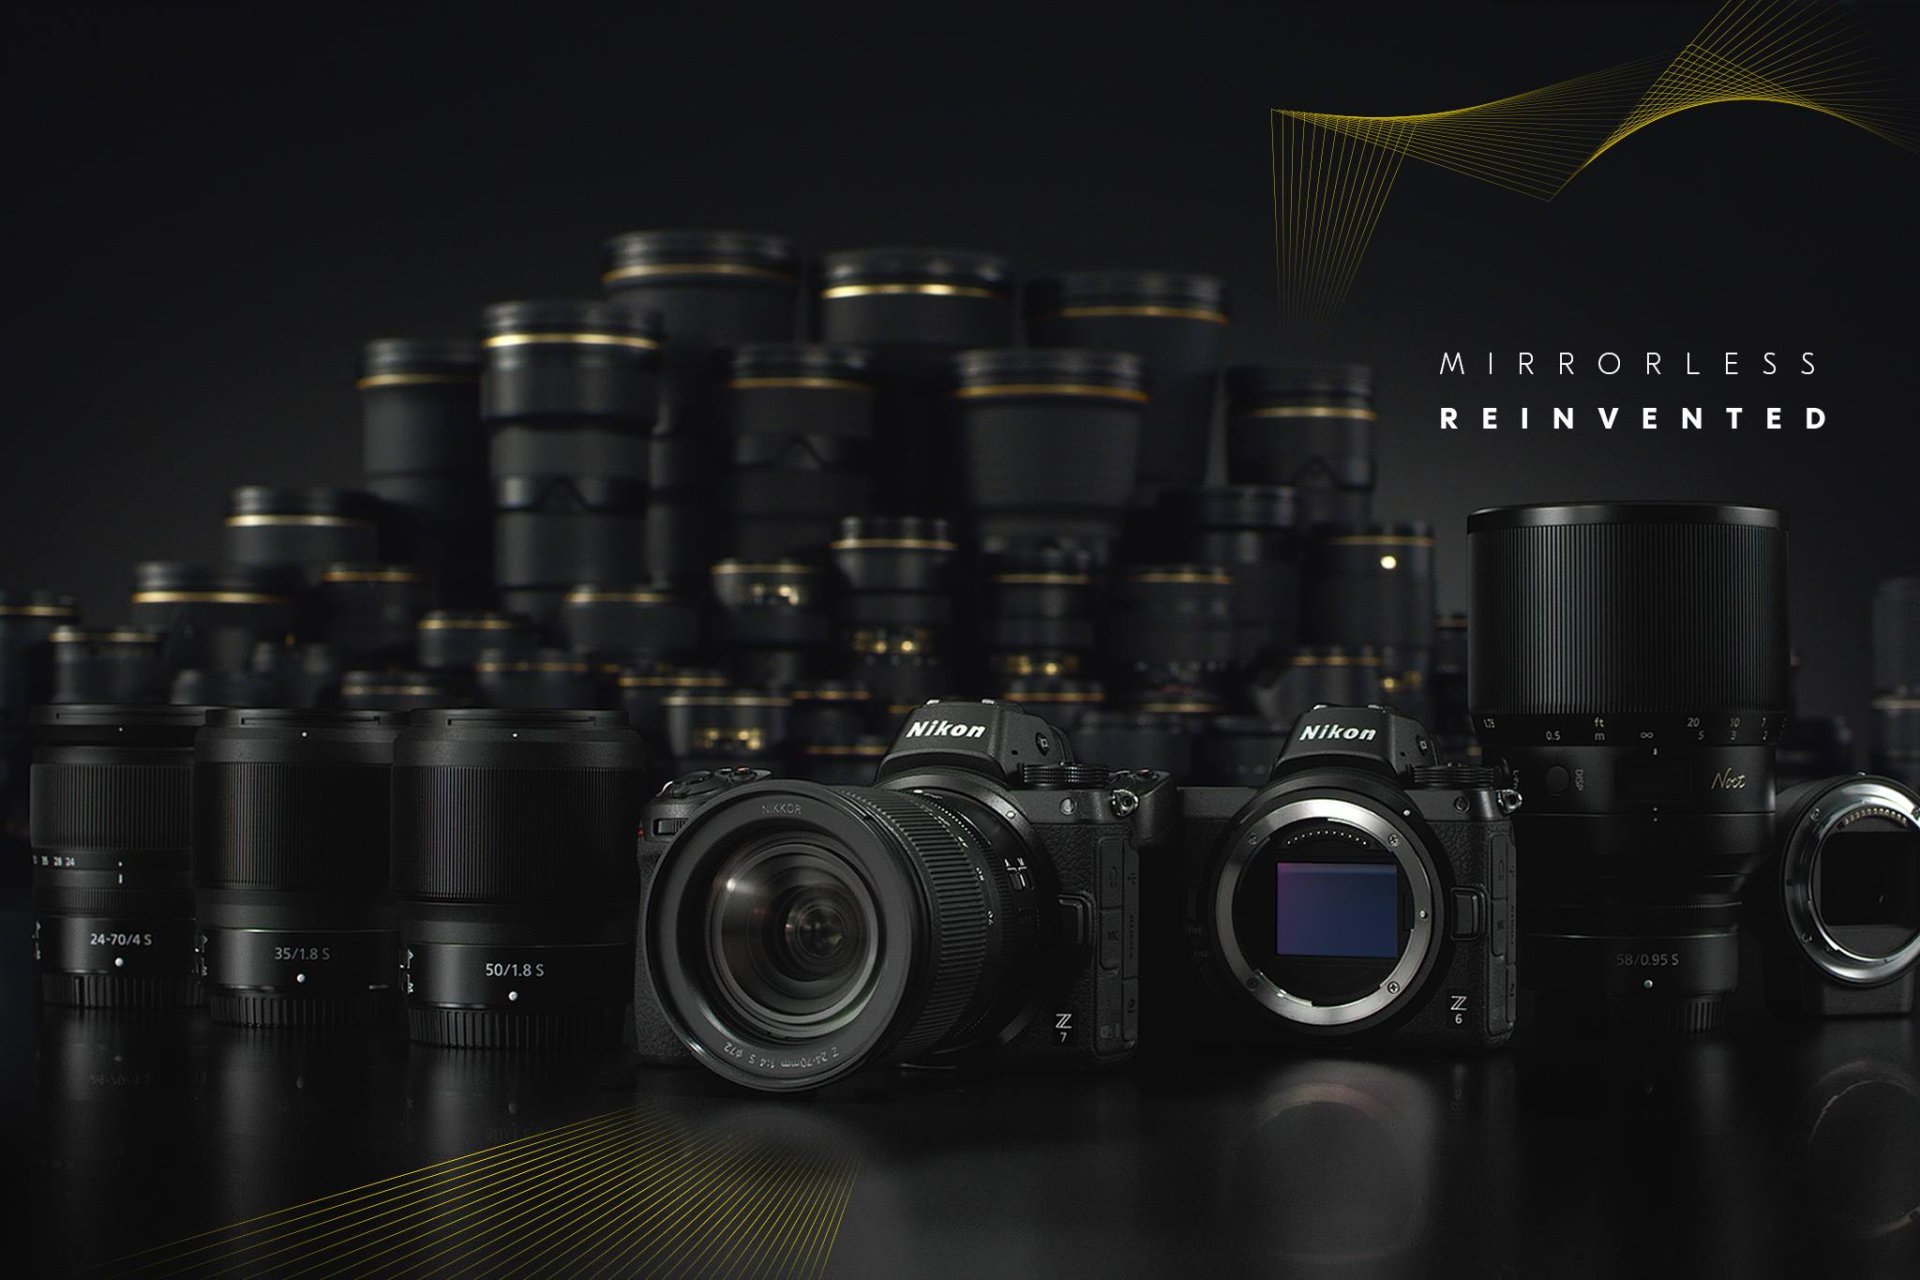 ก้าวที่ยิ่งใหญ่! เปิดตัว Nikon Z7 และ Z6 กล้องฟลูเฟรมตระกูลใหม่พร้อม Z Mount และระบบเลนส์ใหม่